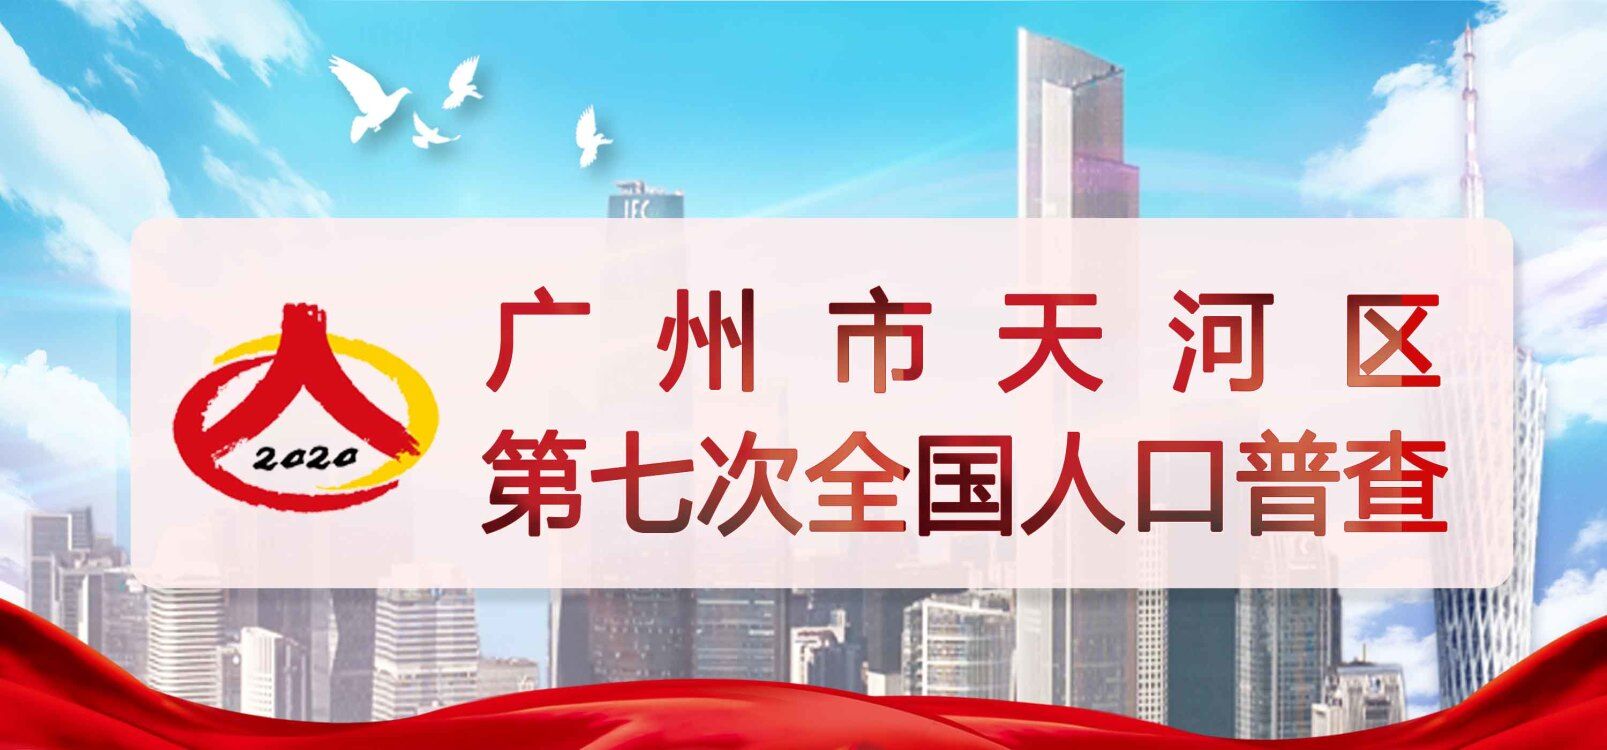 广州市天河区第七次全国人口普查